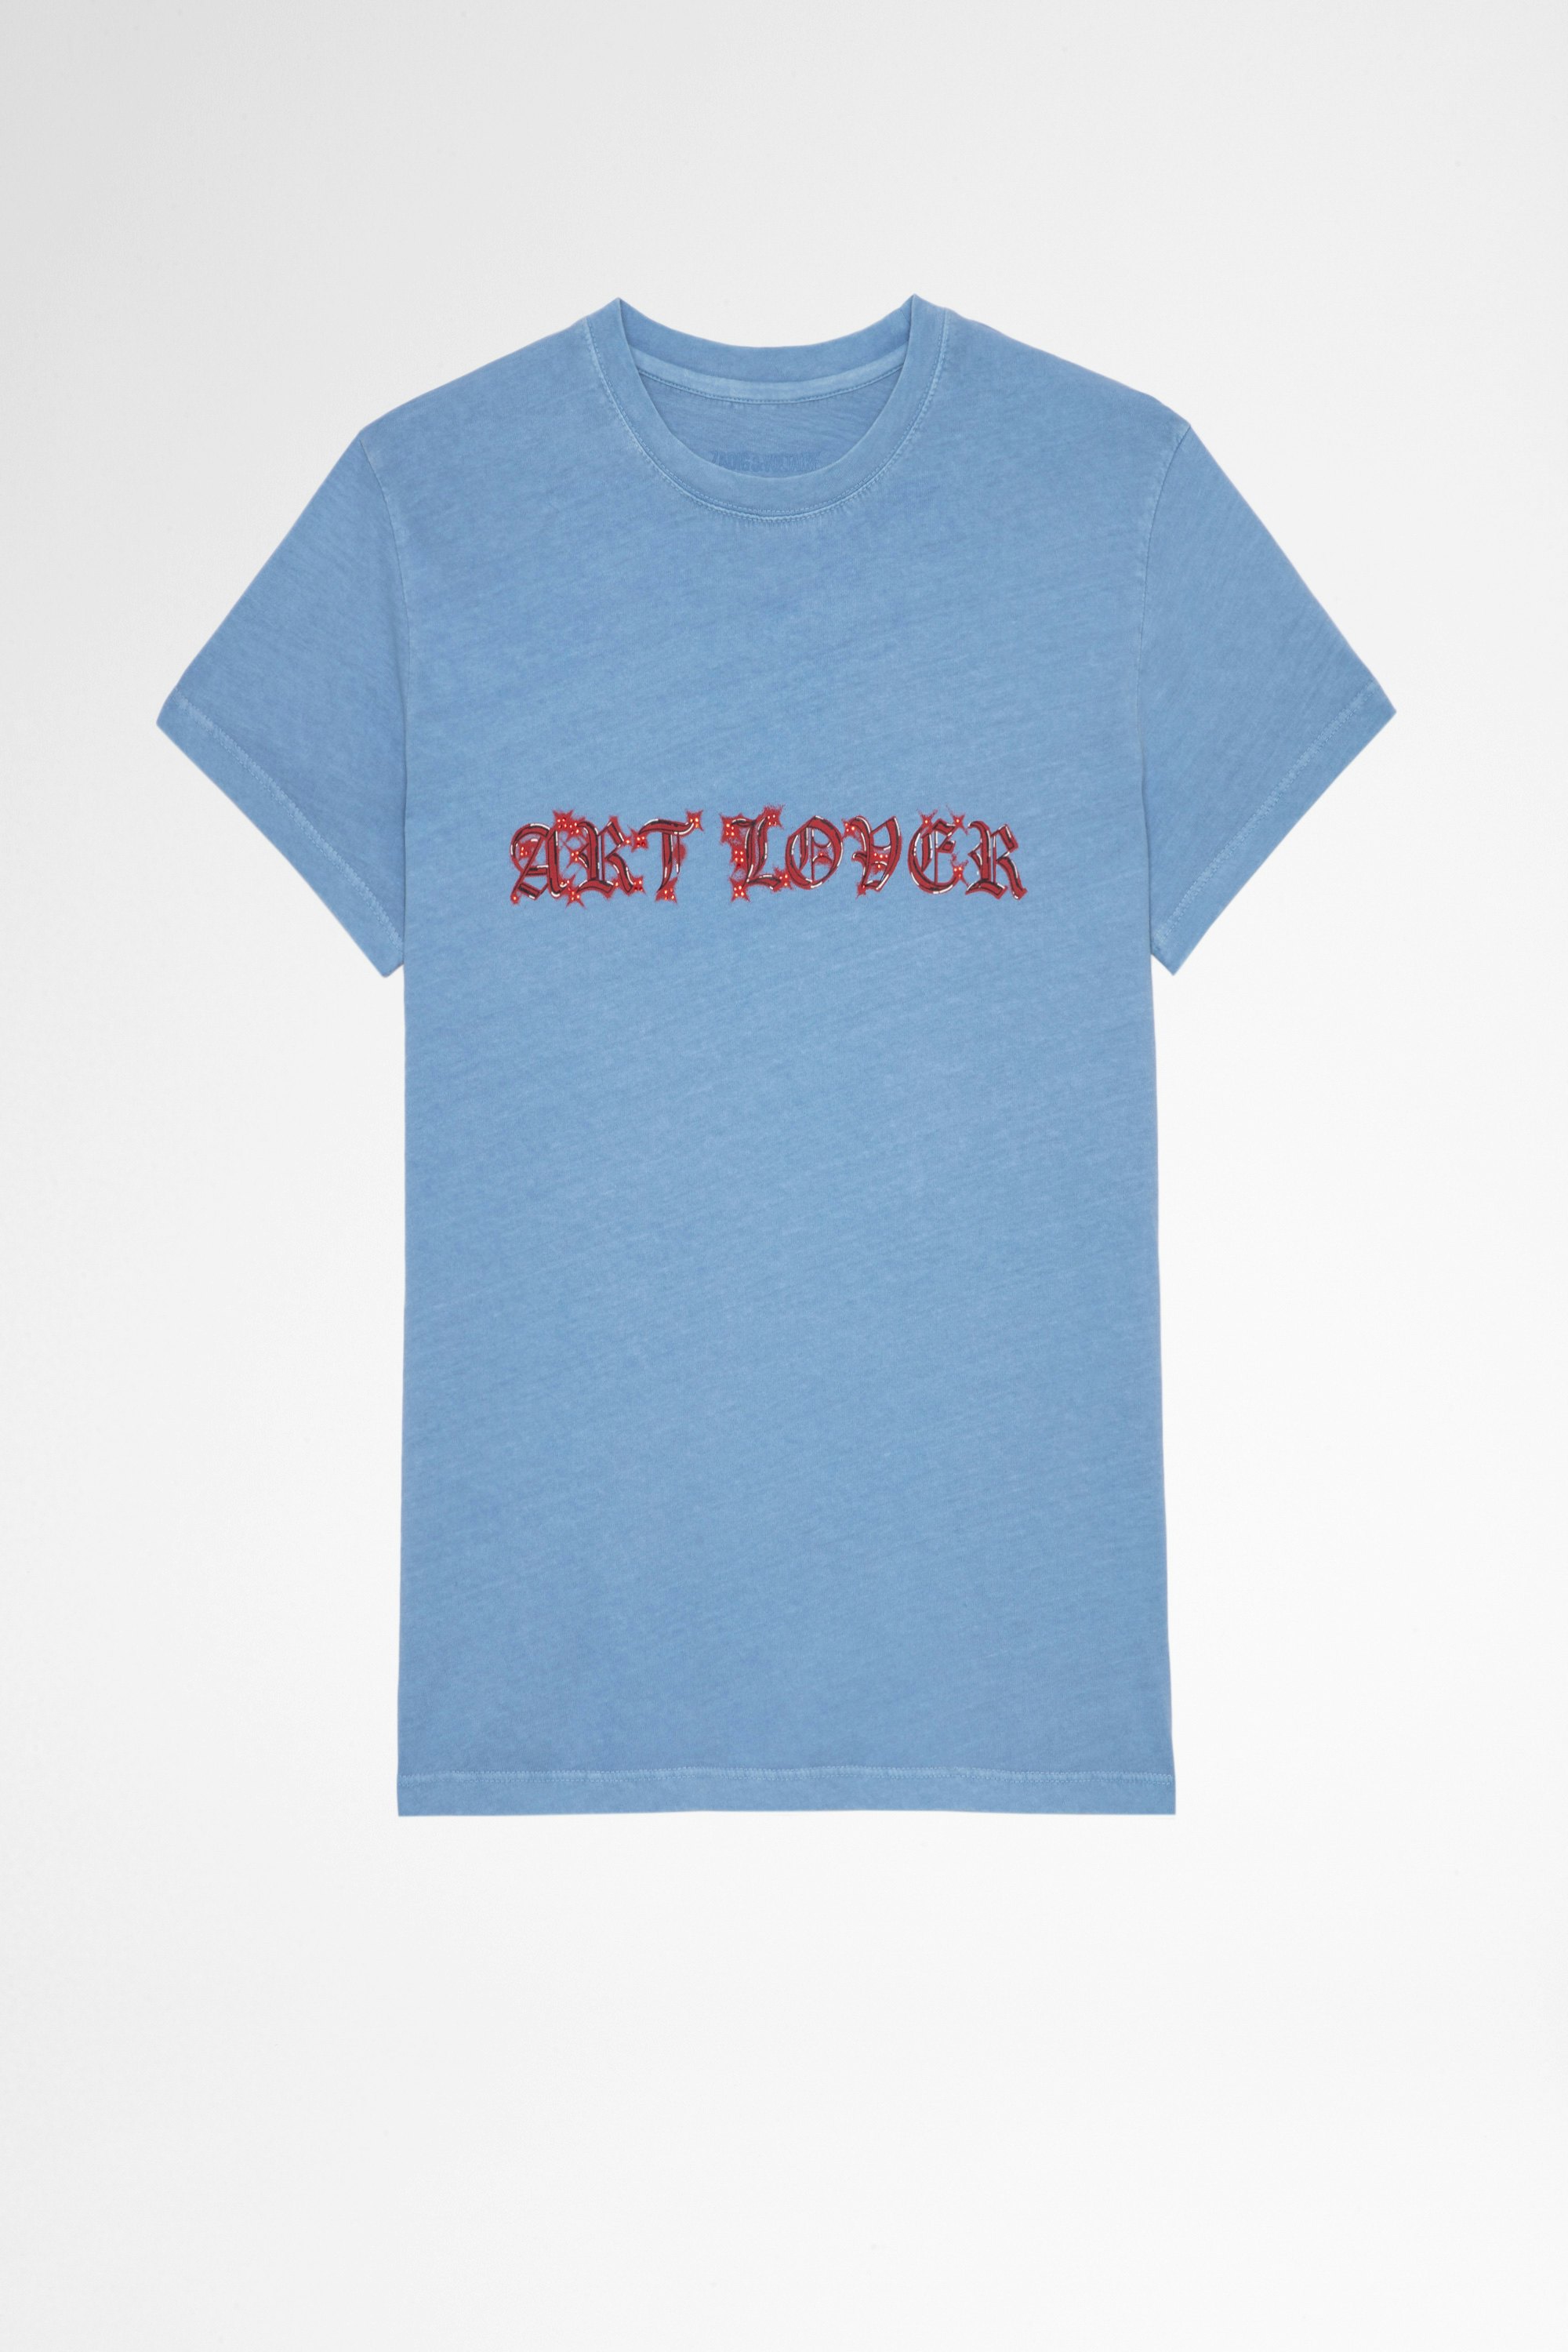 Camiseta Zoe Art Lover Camiseta azul cielo de algodón con impresión Art Lover y cristales para mujer